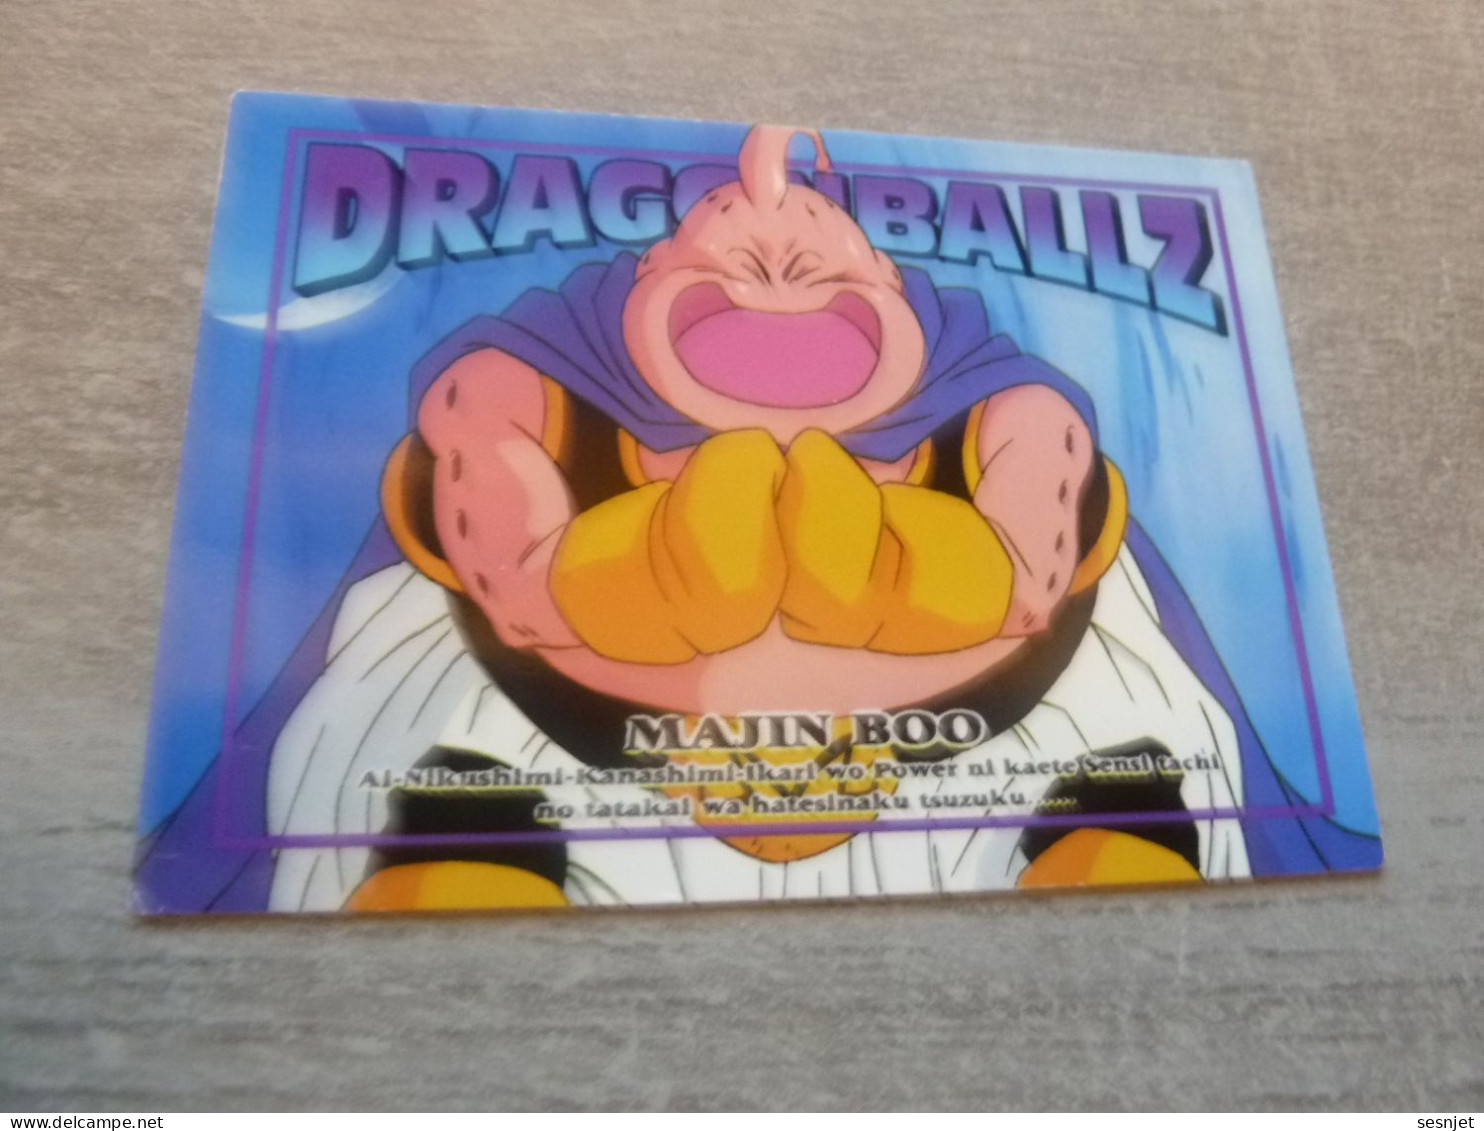 Dragon Ball Z - Majin Boo - Card Number 71 - Majin Boo - Editions Made In Japan - - Dragonball Z